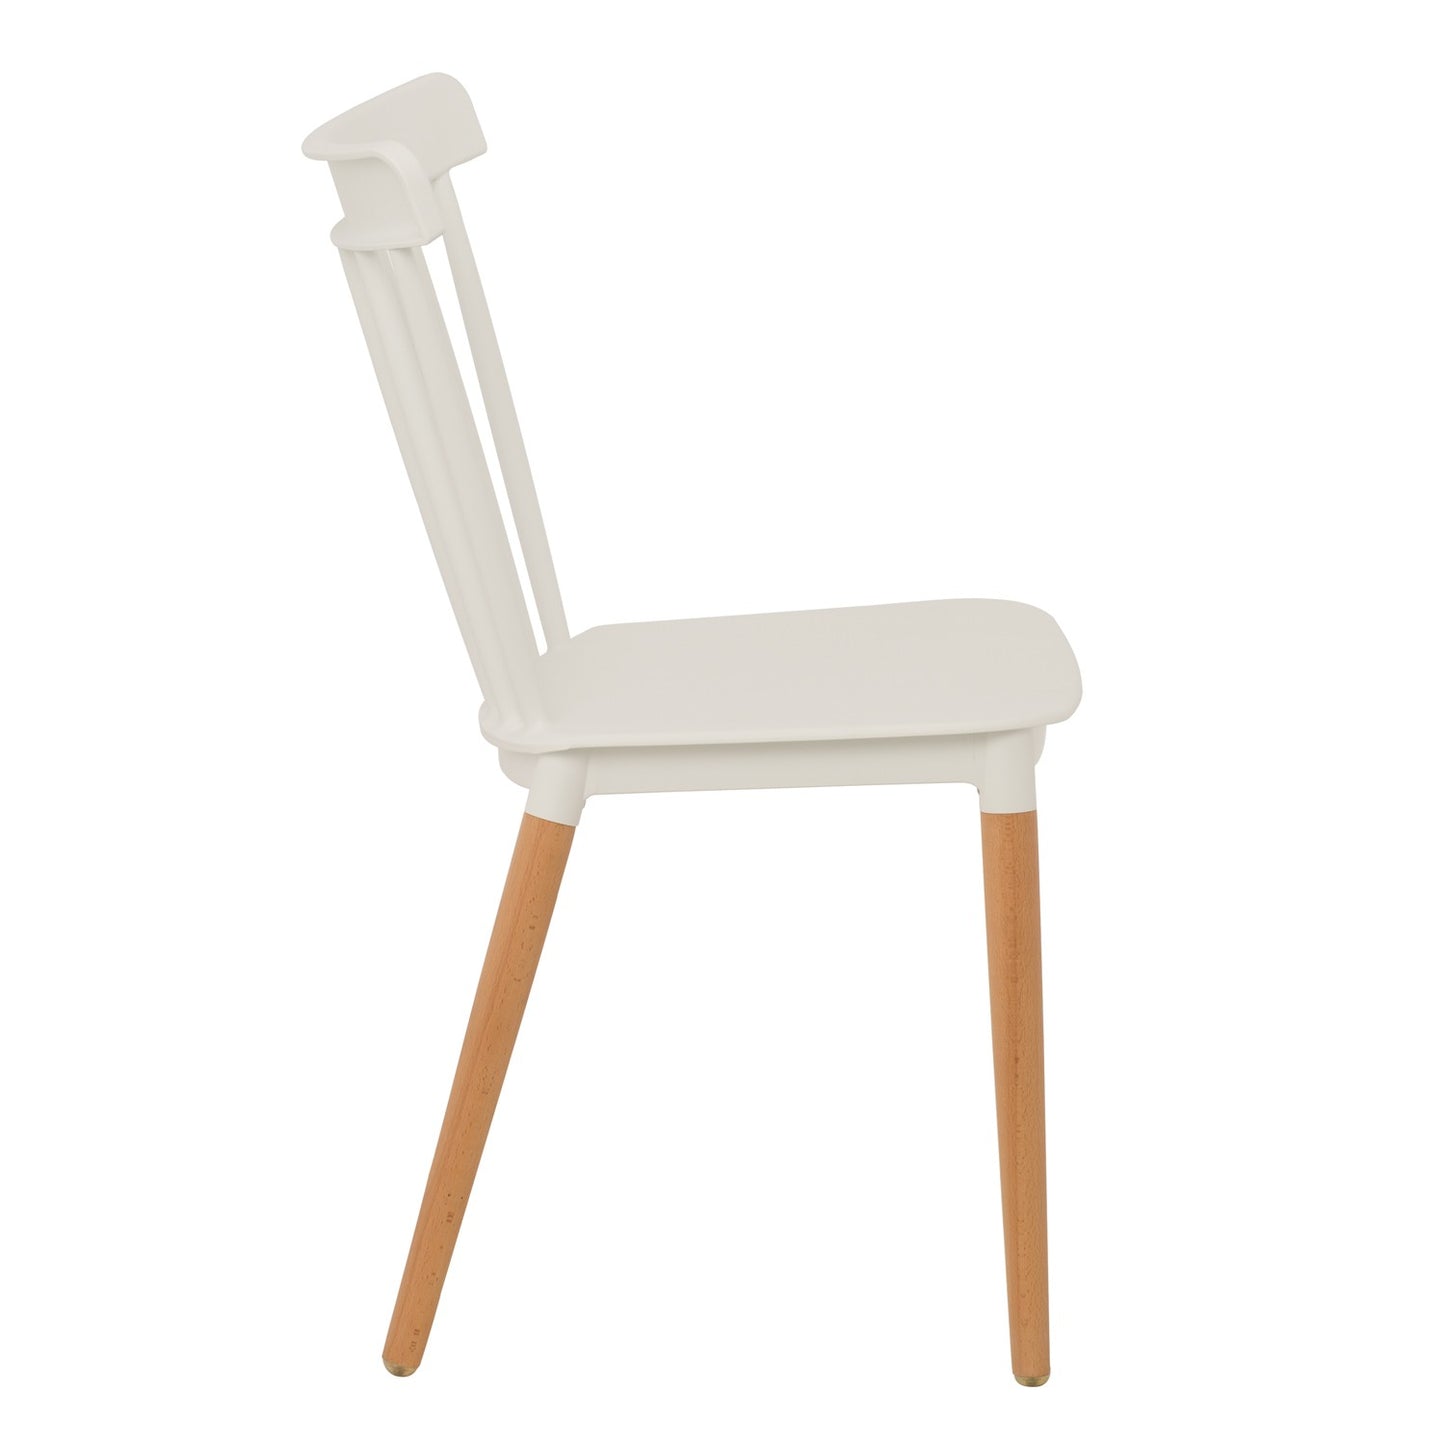 Lot de 4 chaises style scandinave à barreaux modèle POP - Coque en résine blanche et pieds en bois naturel